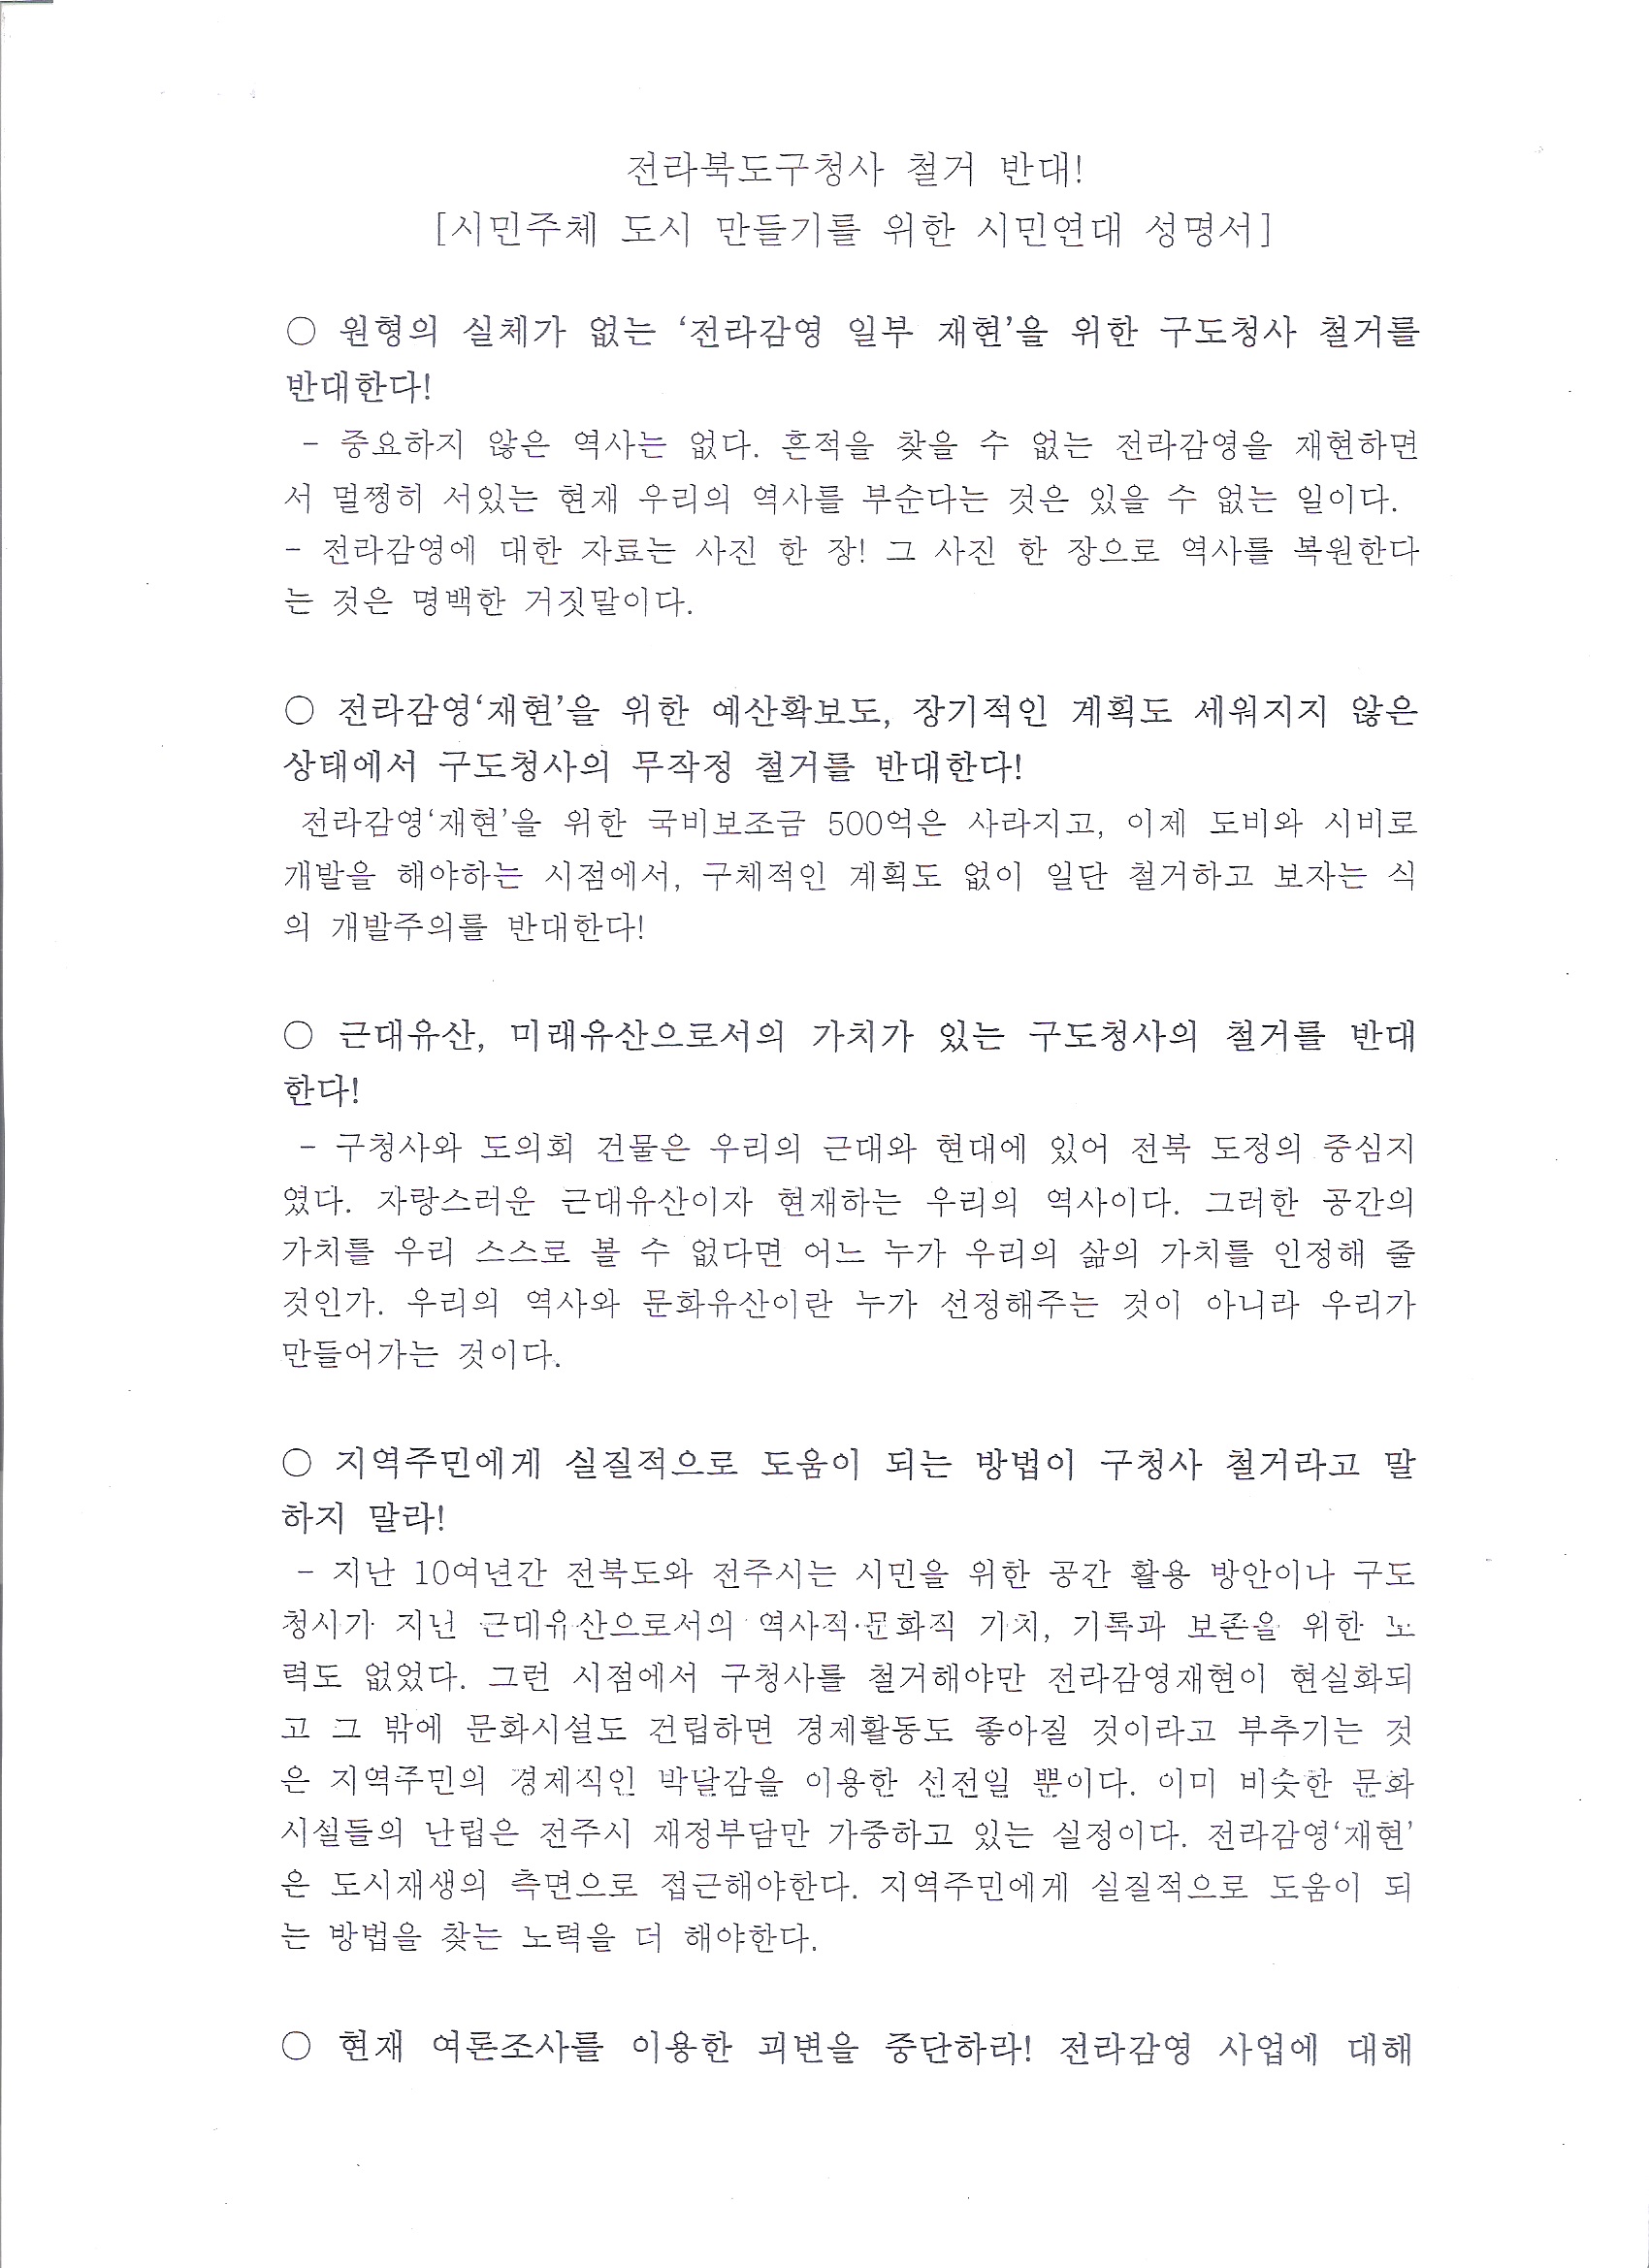 14.9.17_기자회견_전라북도구청사 철거 반대 성명서1.jpg